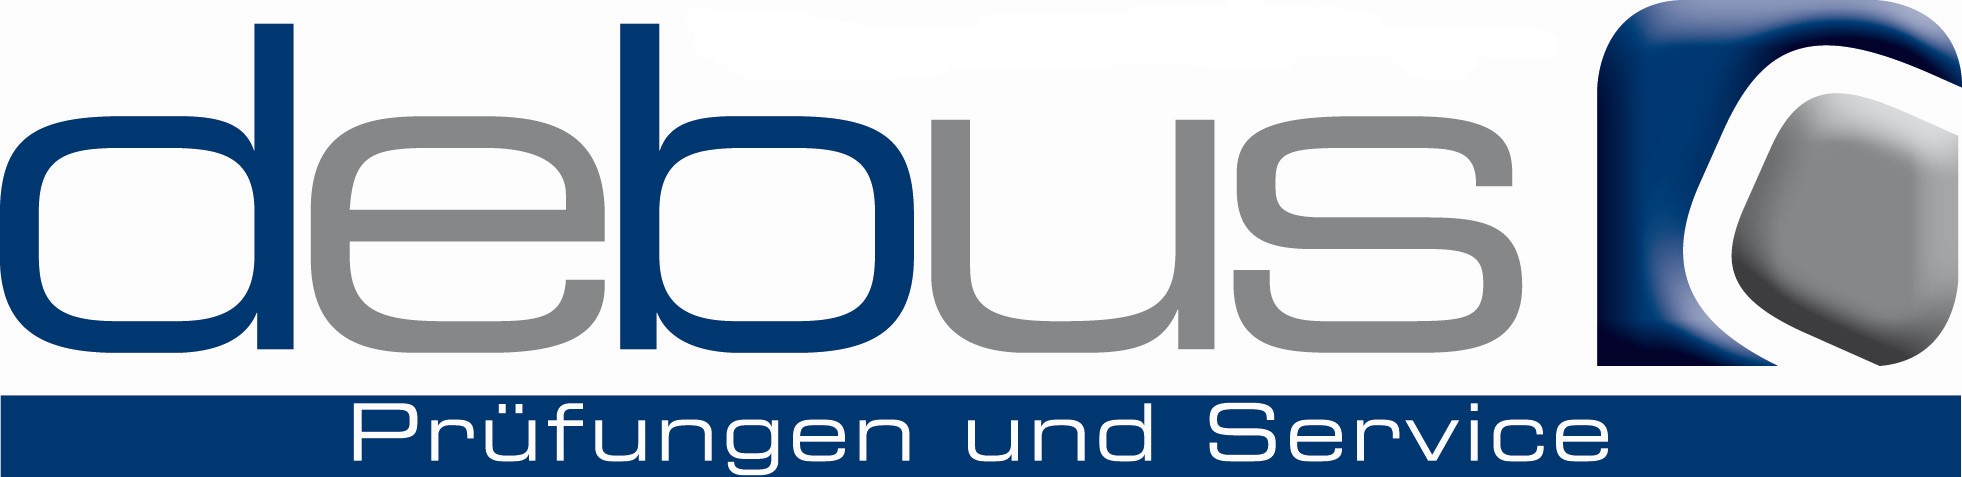 Debus - Prüfungen und Service Logo